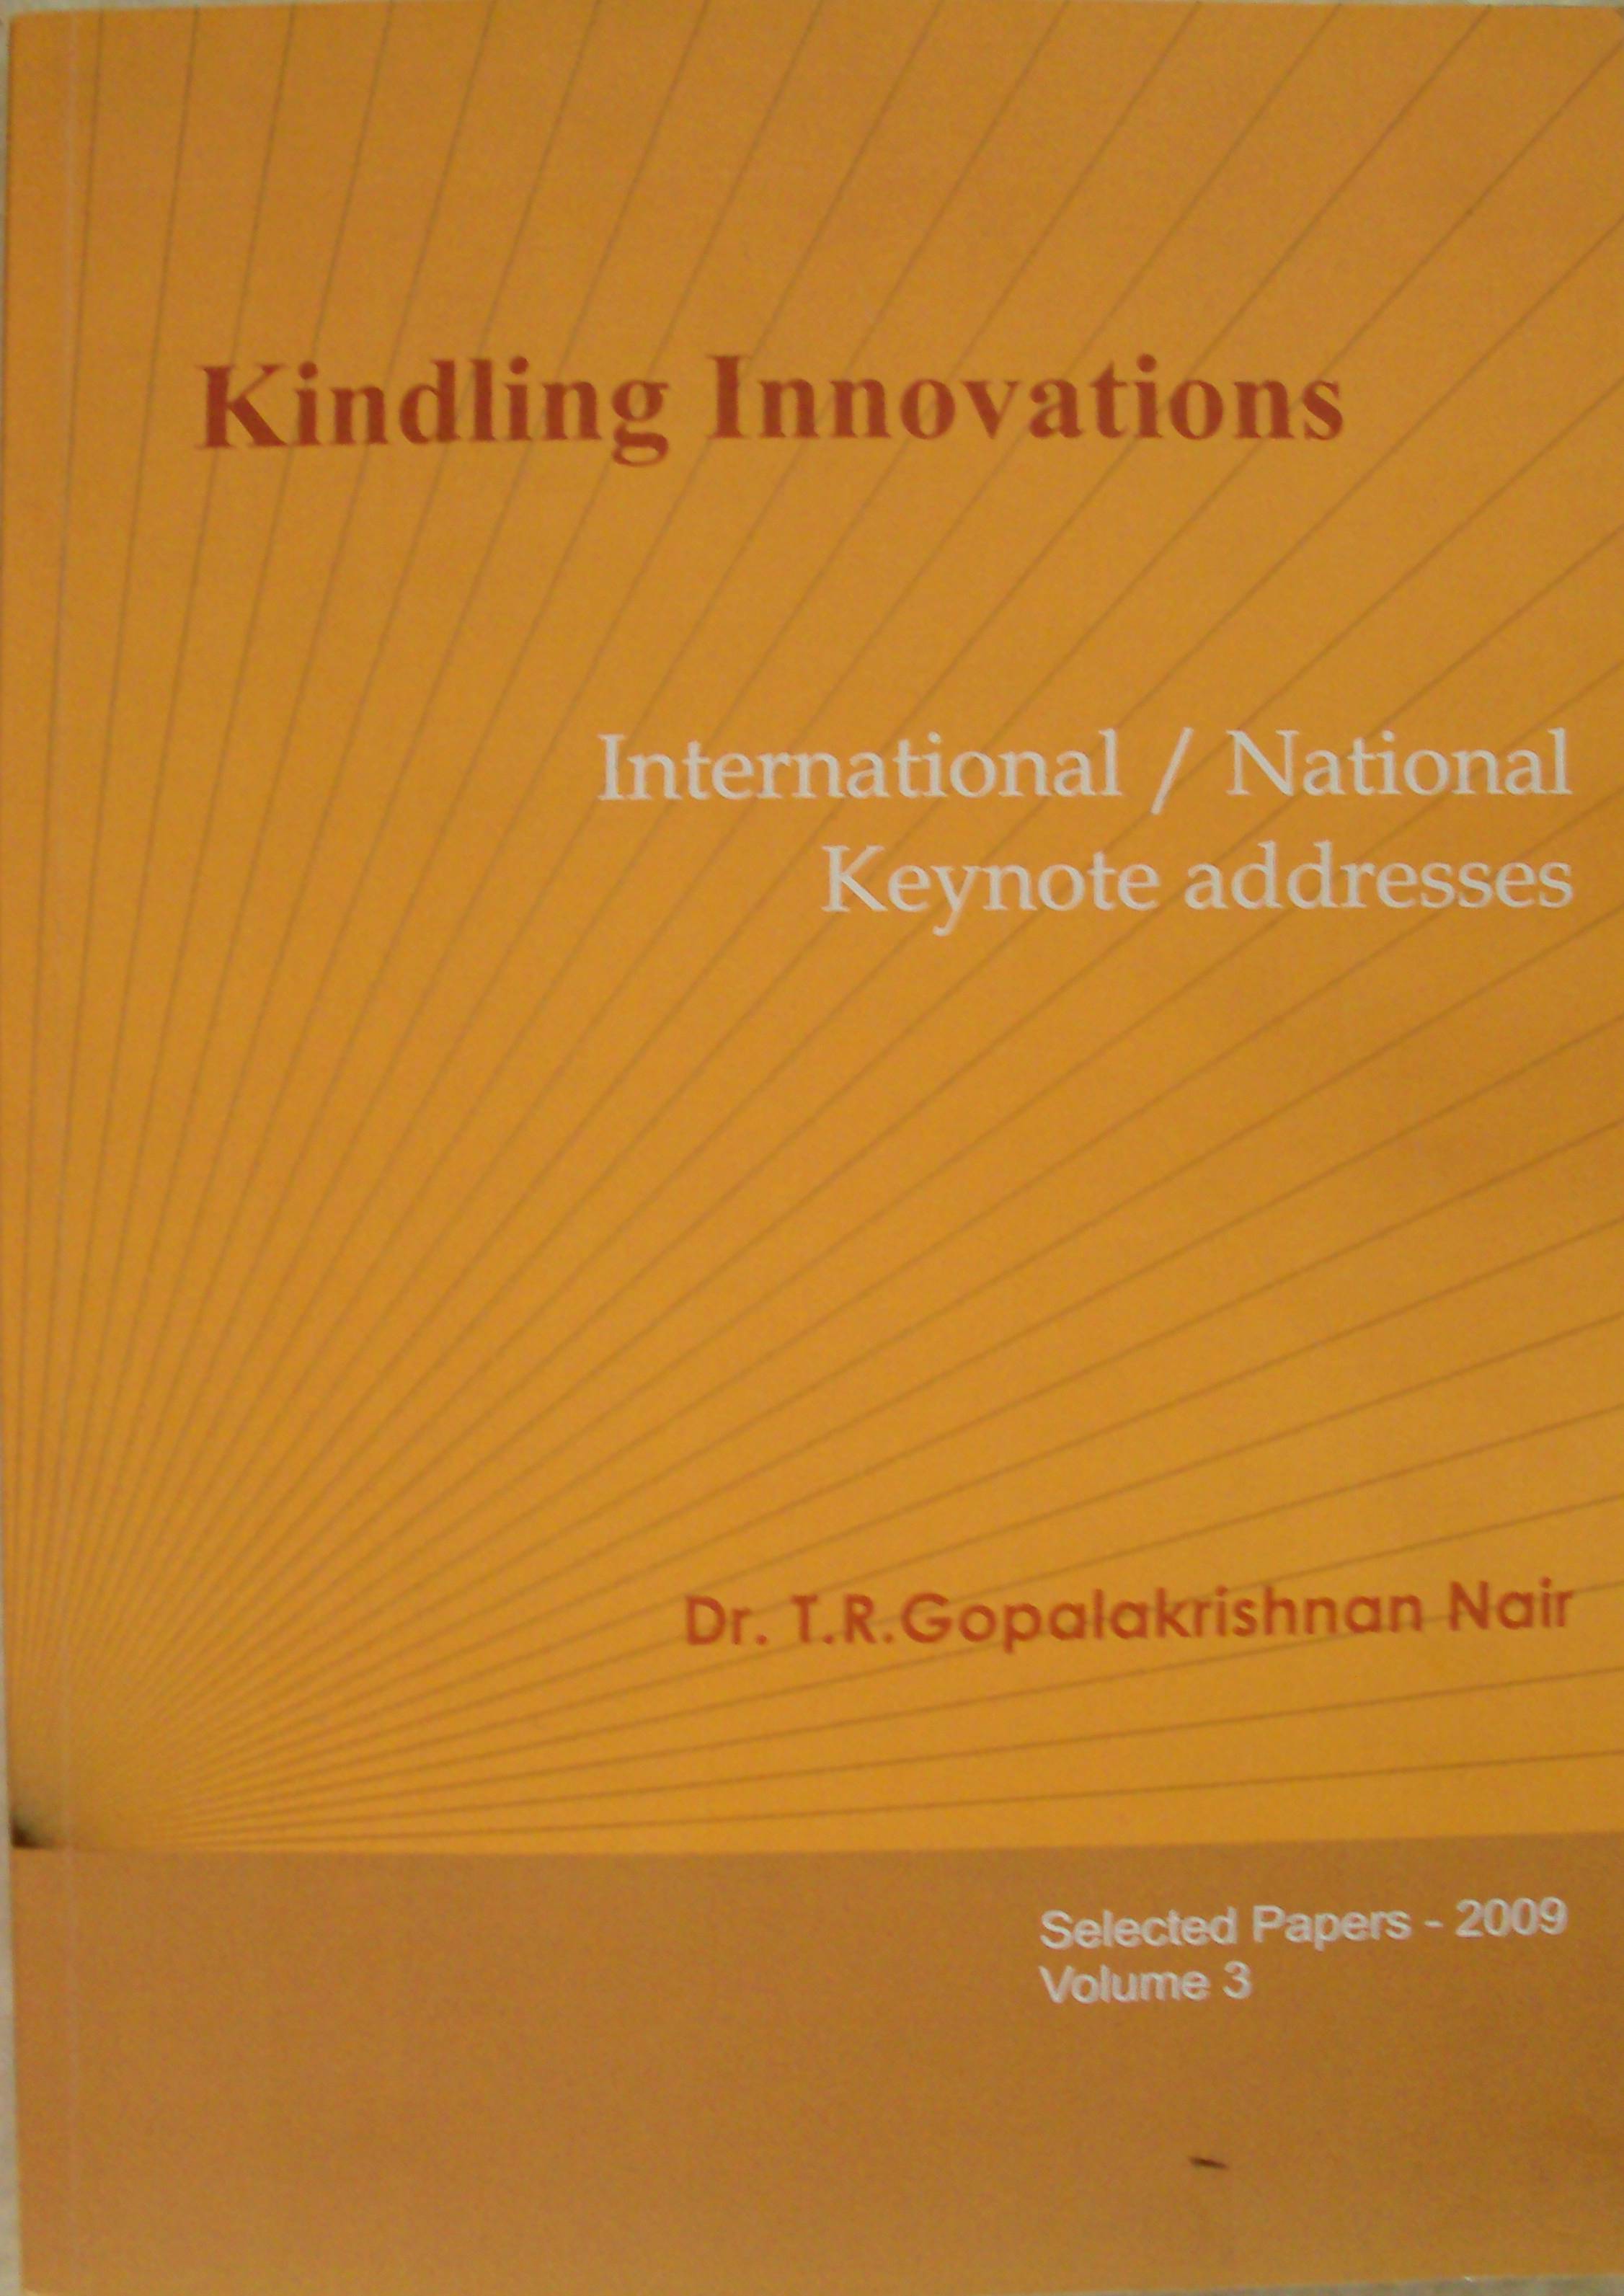 Keynotes, Kindling Innovations Vol.1